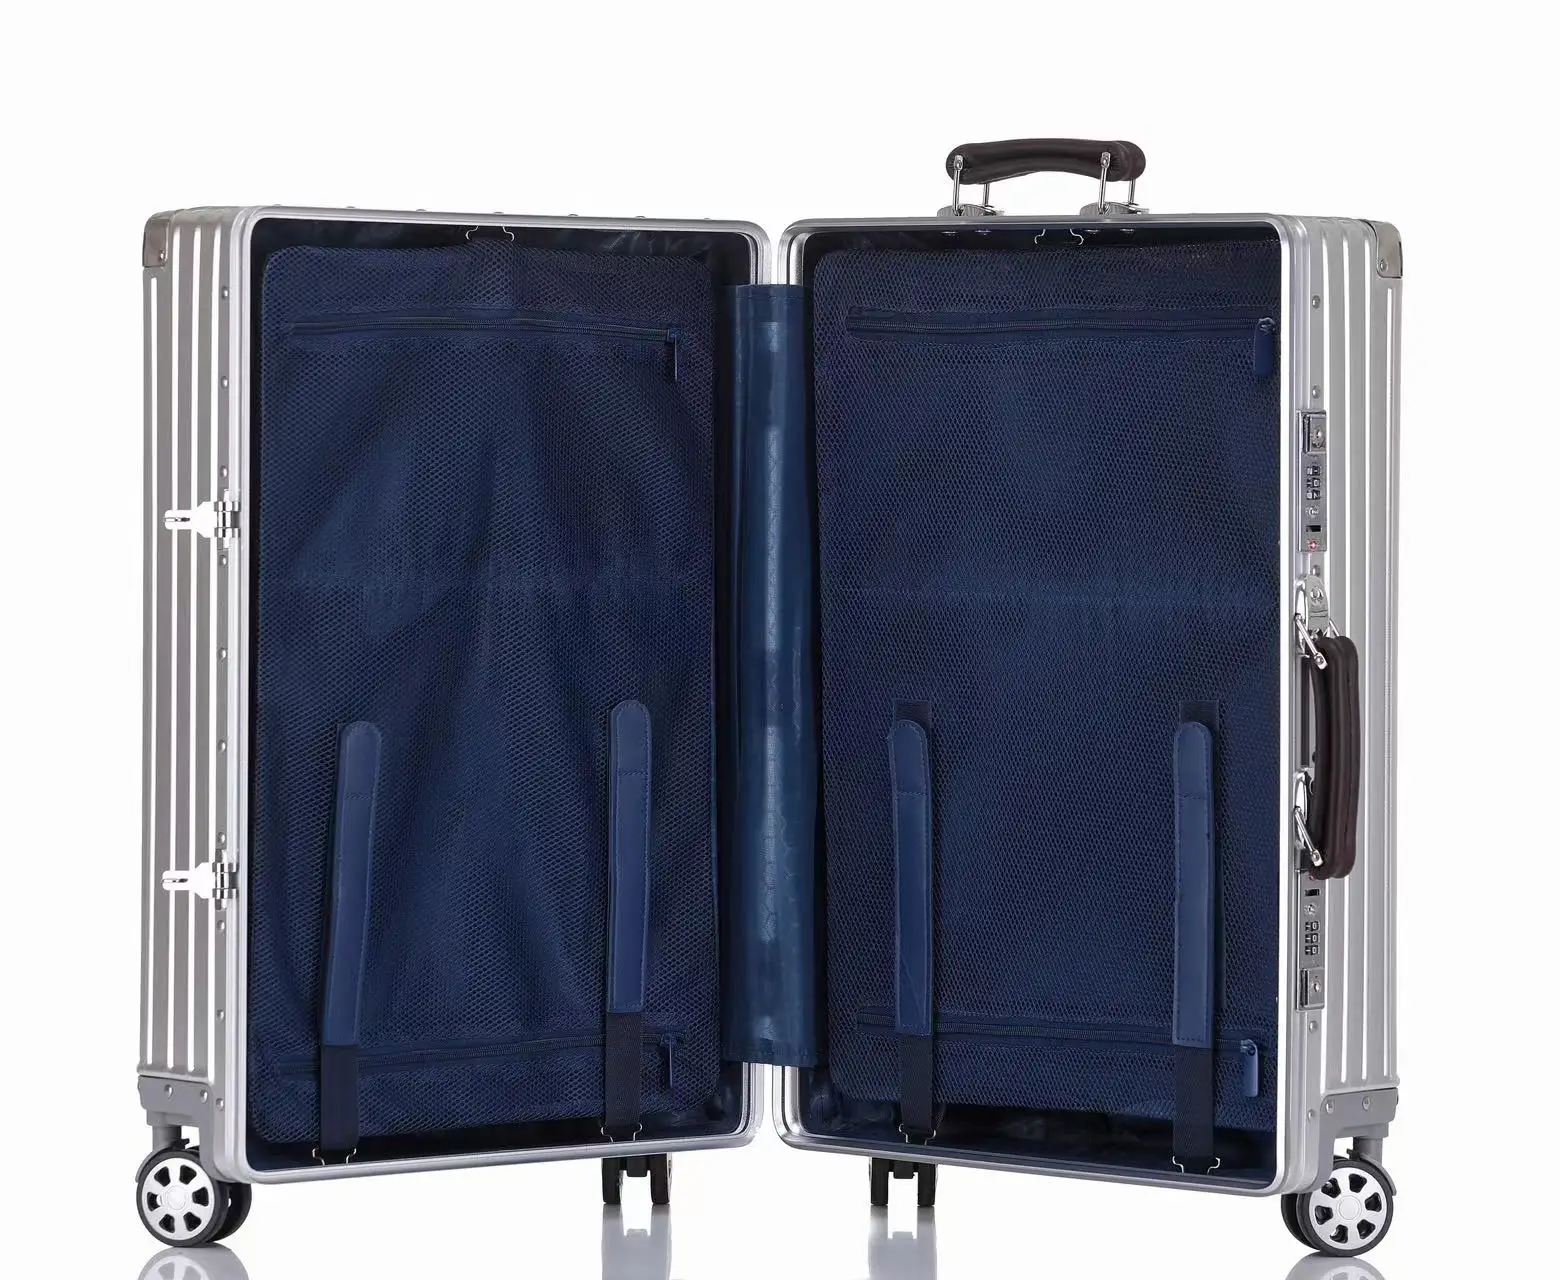 Maleta de equipaje de aluminio, 3 tamaños (20, 26, 29) TSA Lock Carry On  Silver, plateado, Estuche rígido